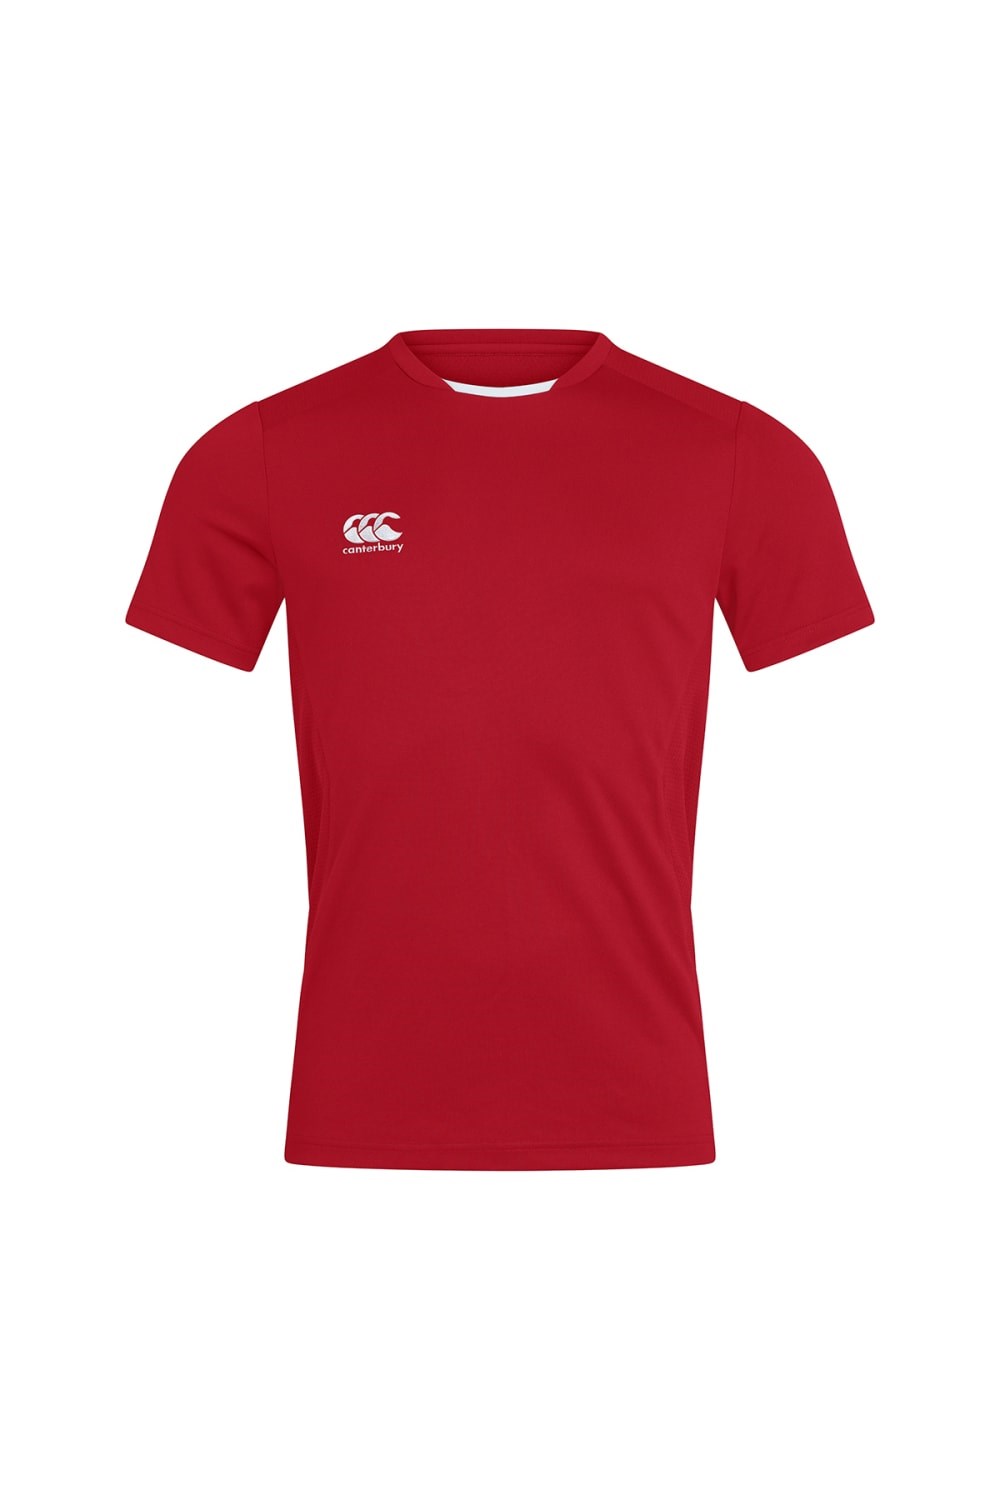 Club Dry Unisex T-shirt -